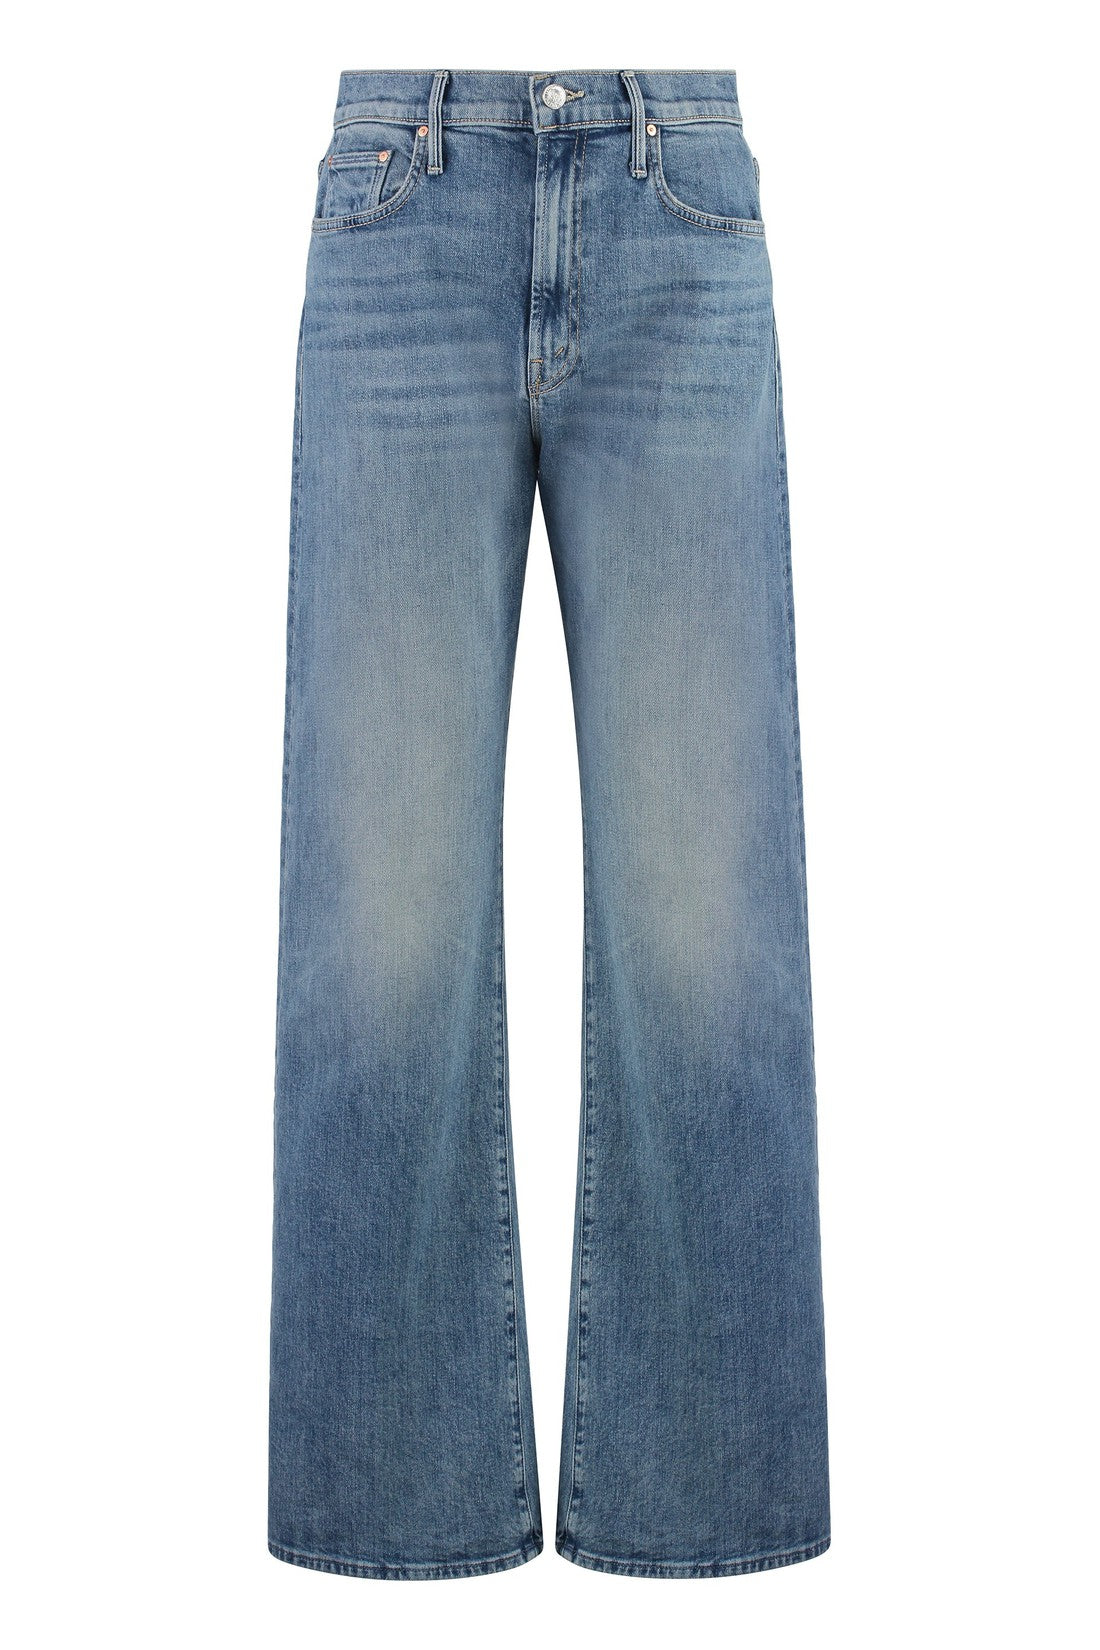 Mother-OUTLET-SALE-Wide-leg jeans-ARCHIVIST